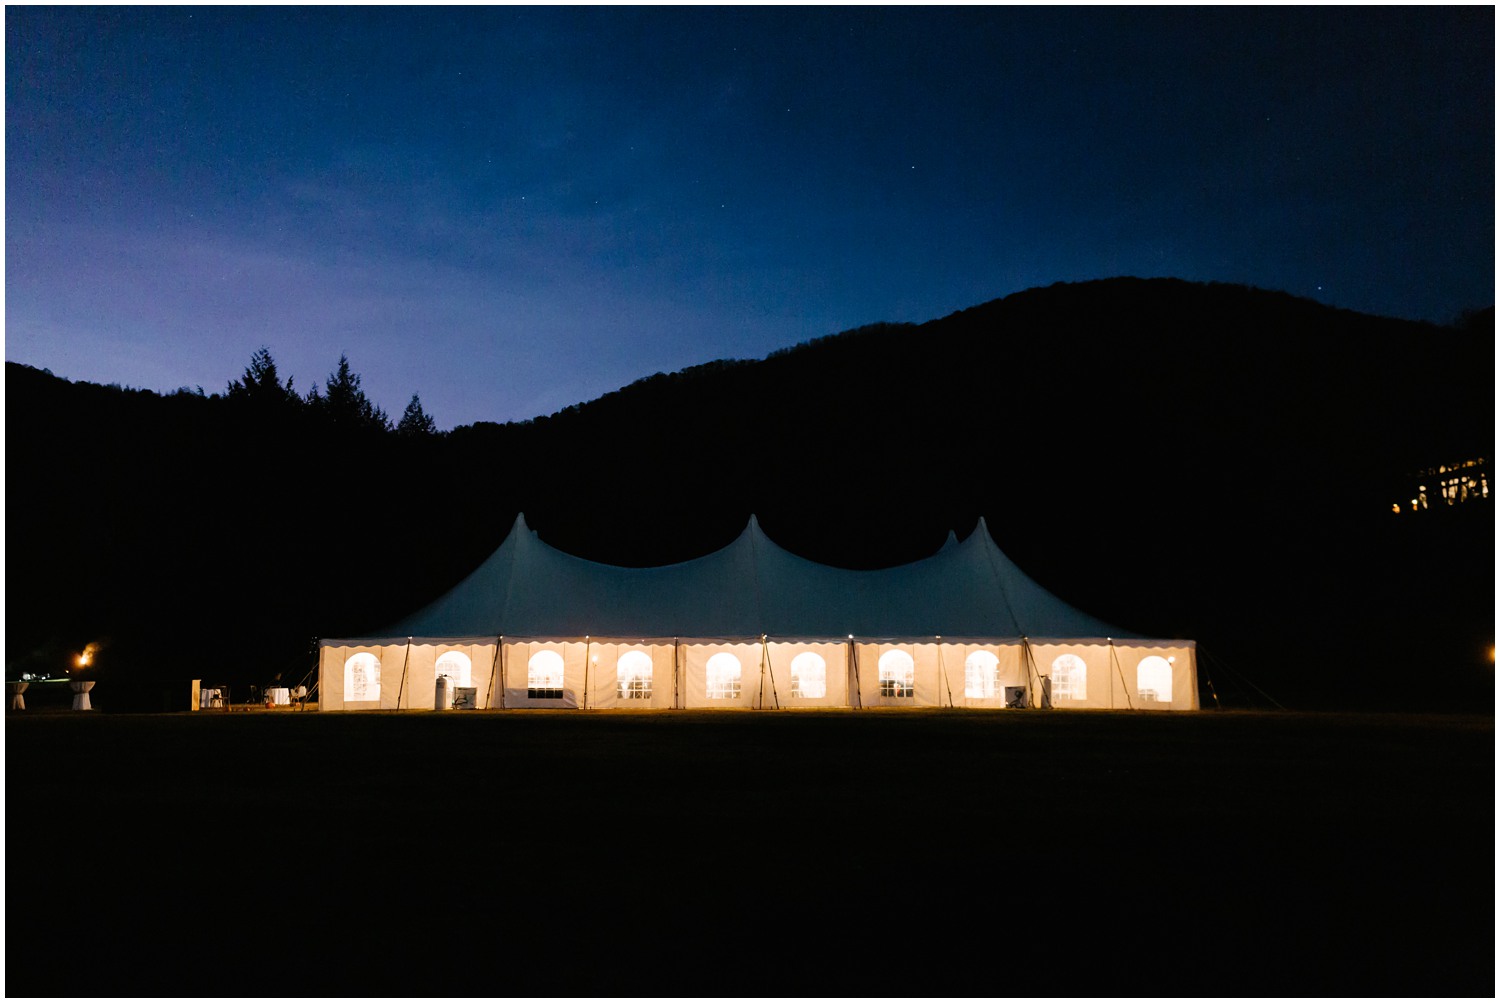 Lake Eden Events wedding reception in tent at dark